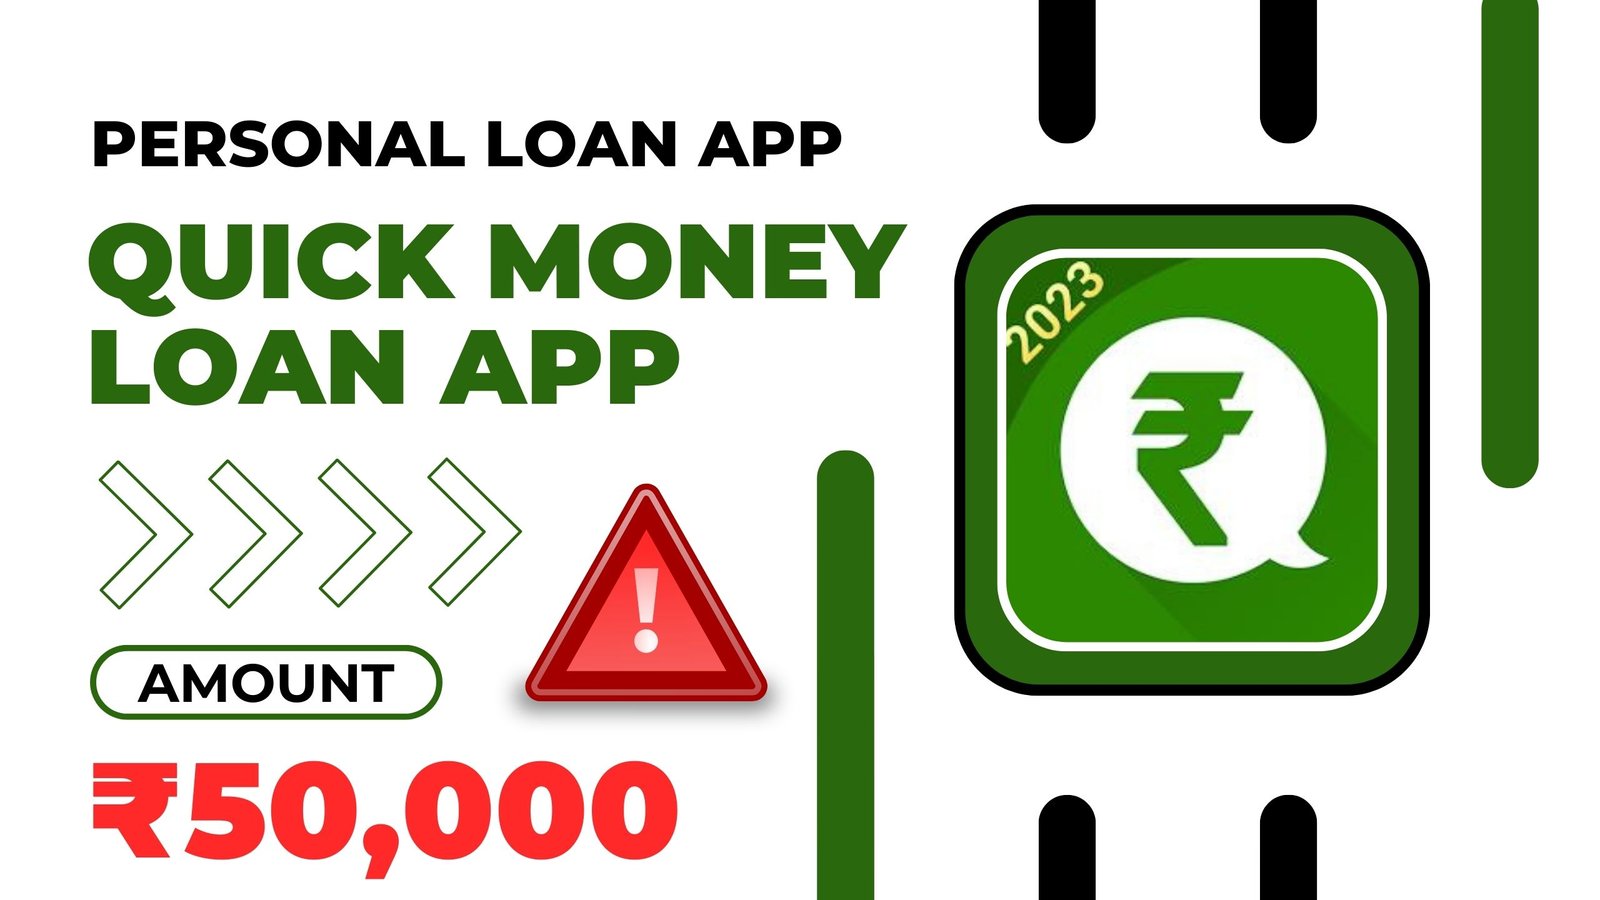 Quick Money Loan App Loan Amount